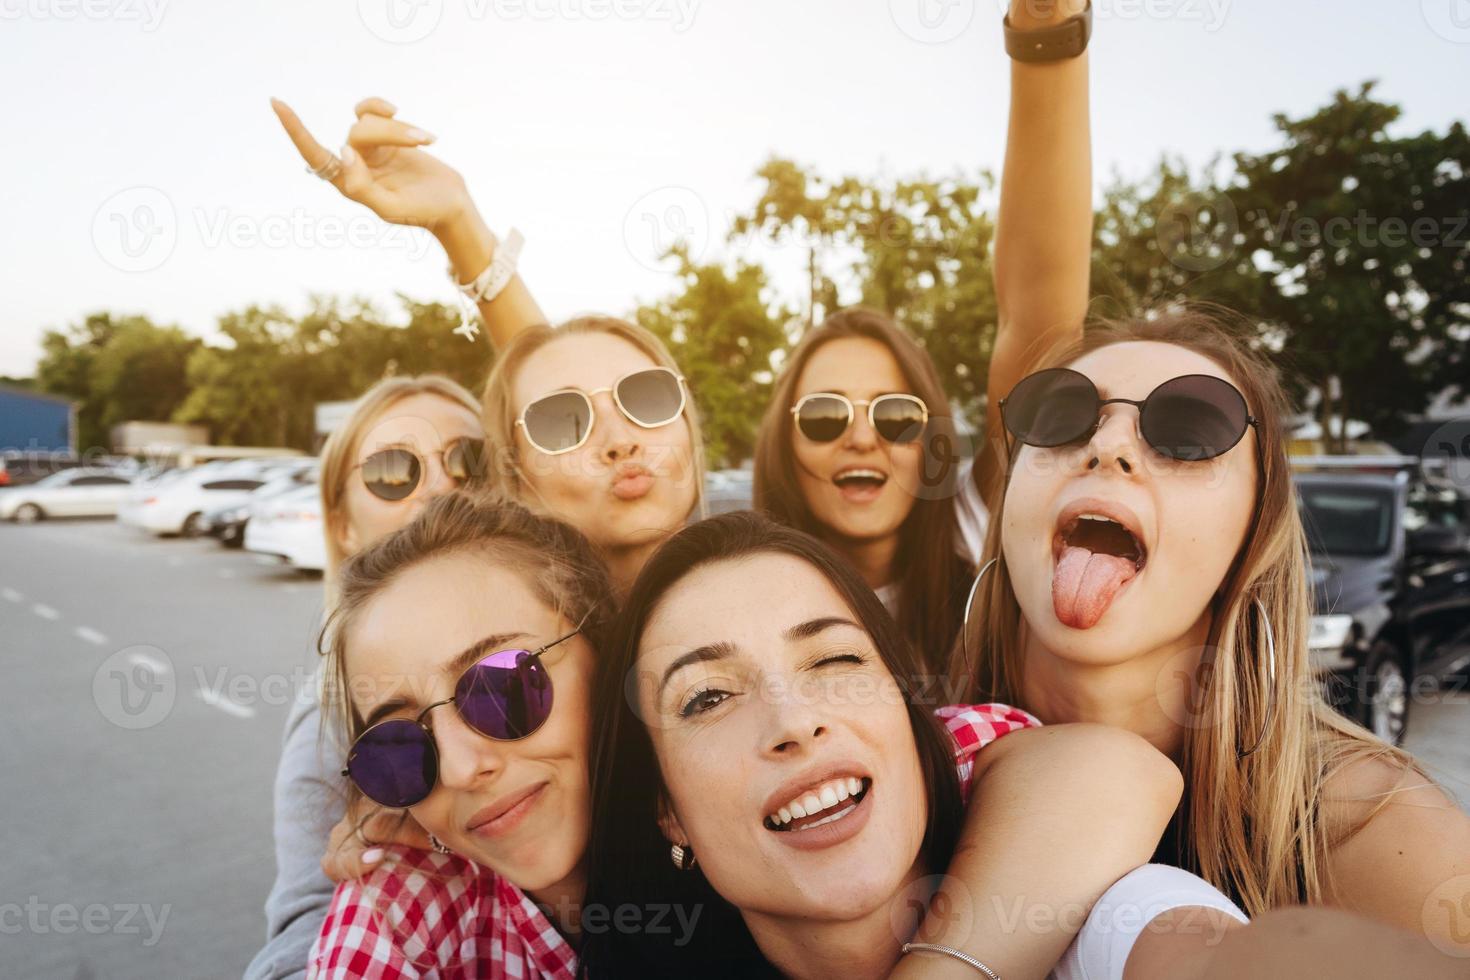 sex ung skön flickor ser på de kamera och tar en selfie foto